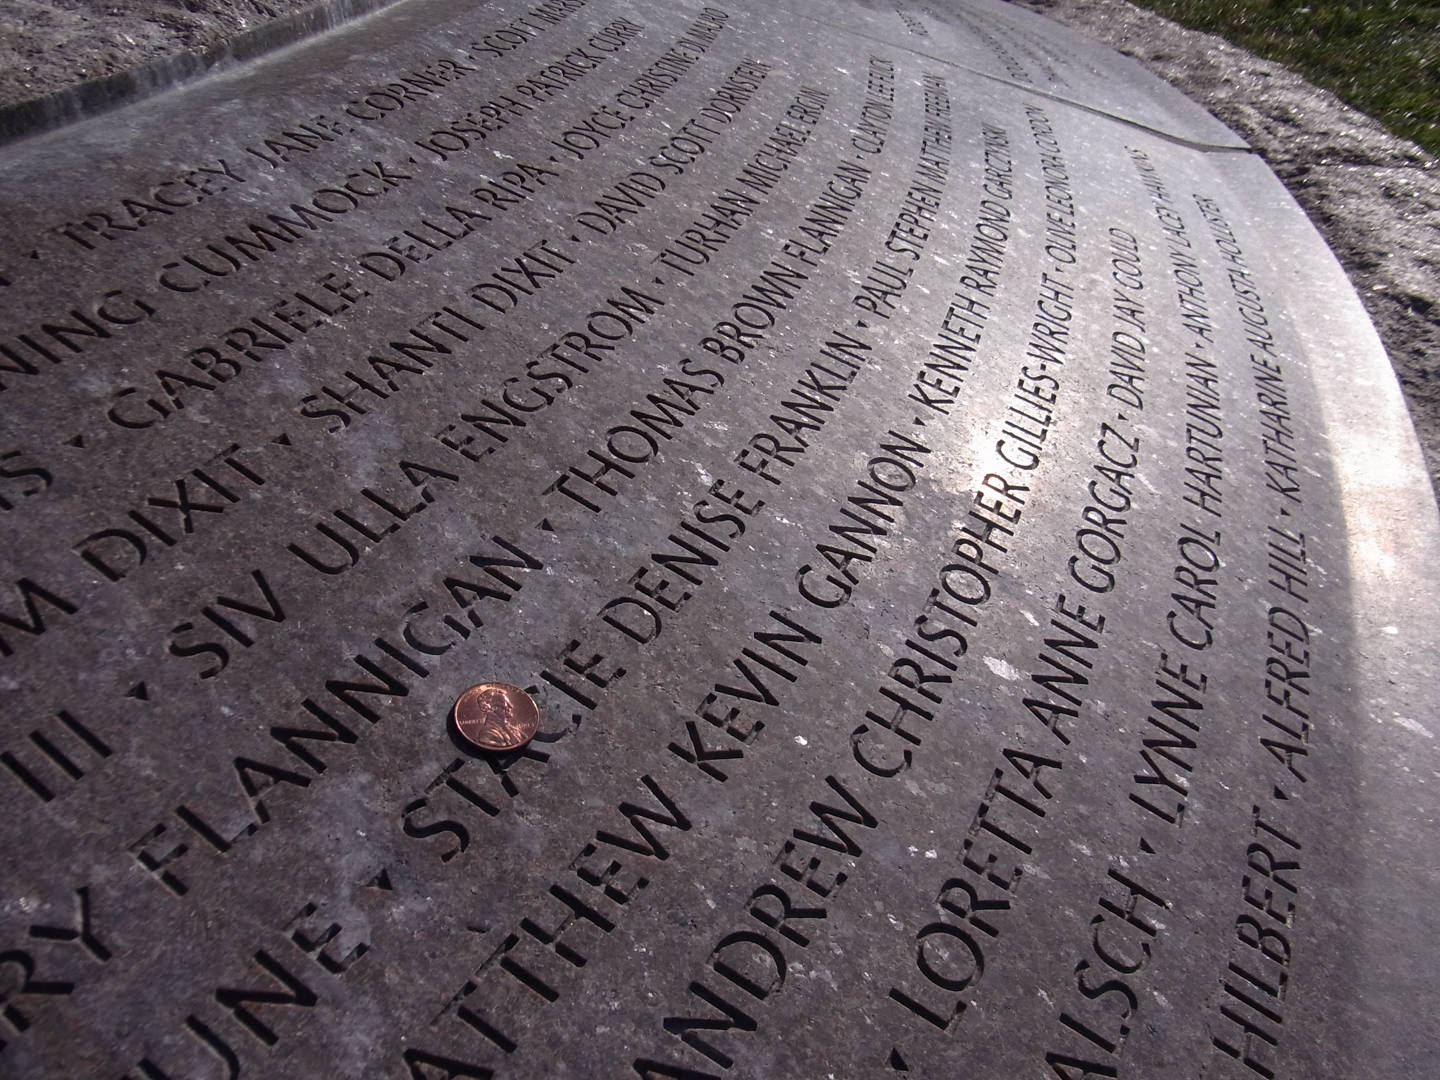 Lockerbie Disaster Memorial